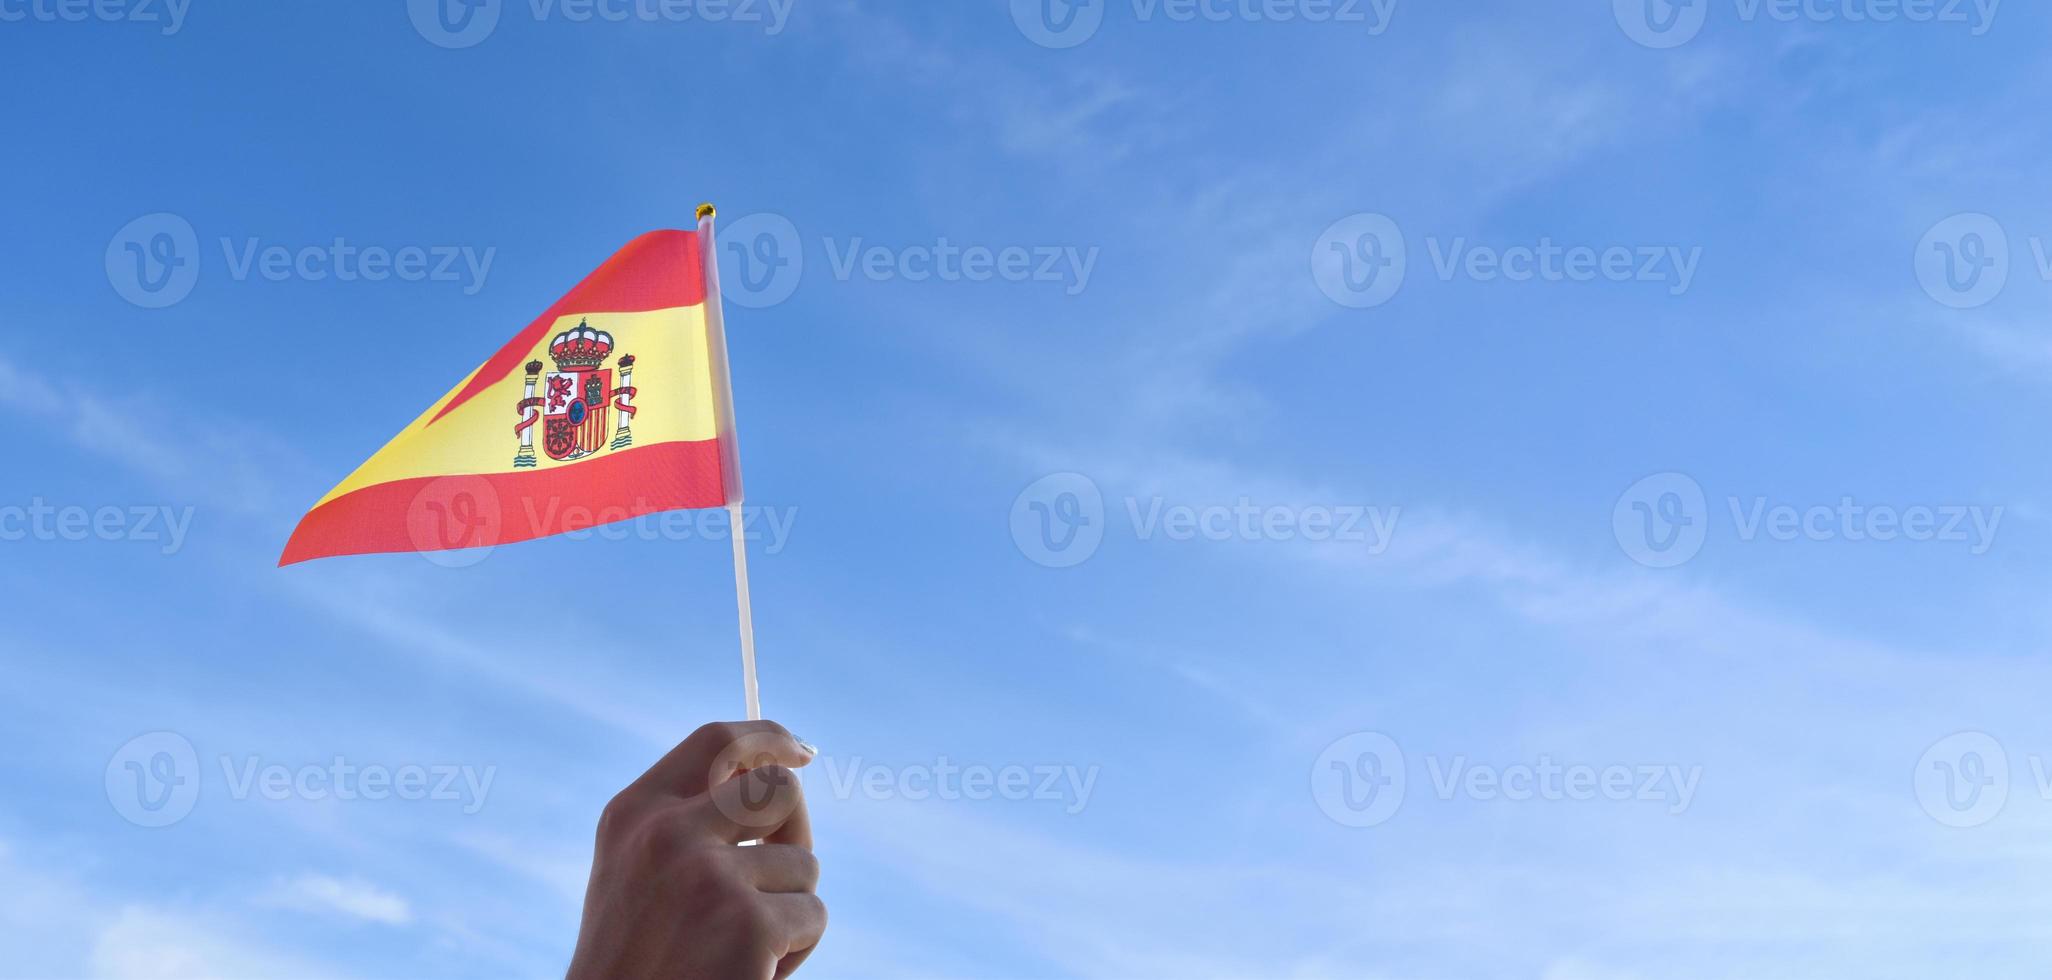 spanska nationell flagga eller Spanien flagga innehav i hand och vinka på blå himmel bakgrund, mjuk och selektiv fokus. foto